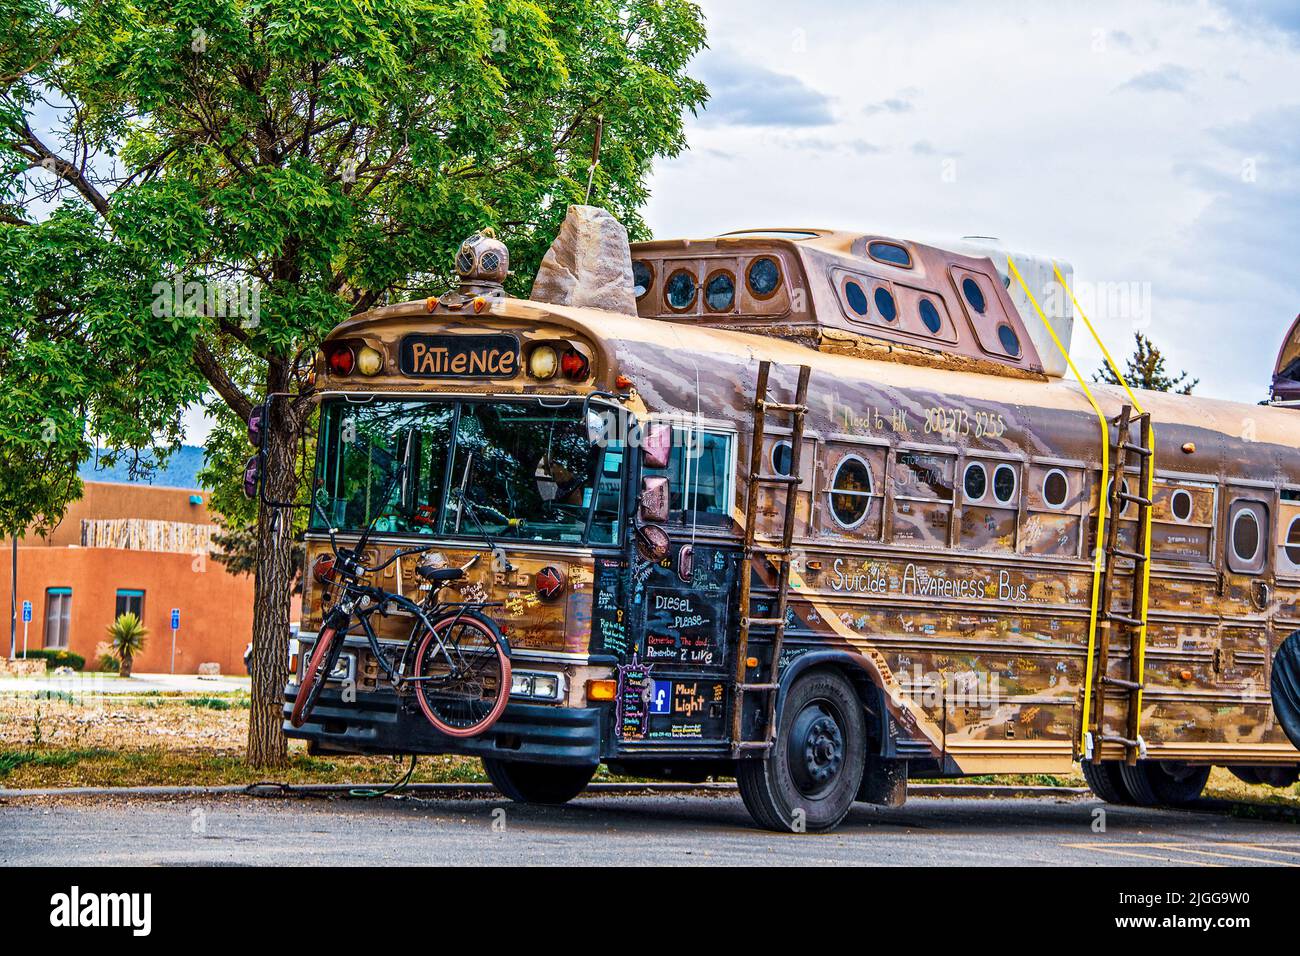 2021 05 21 Taos NM USA Steampunk umgebauter Kunstbus für Reise- und Selbstmordbewusstsein mit Unterschriften auf dem ganzen Bus und Fahrrad vorne befestigt Stockfoto